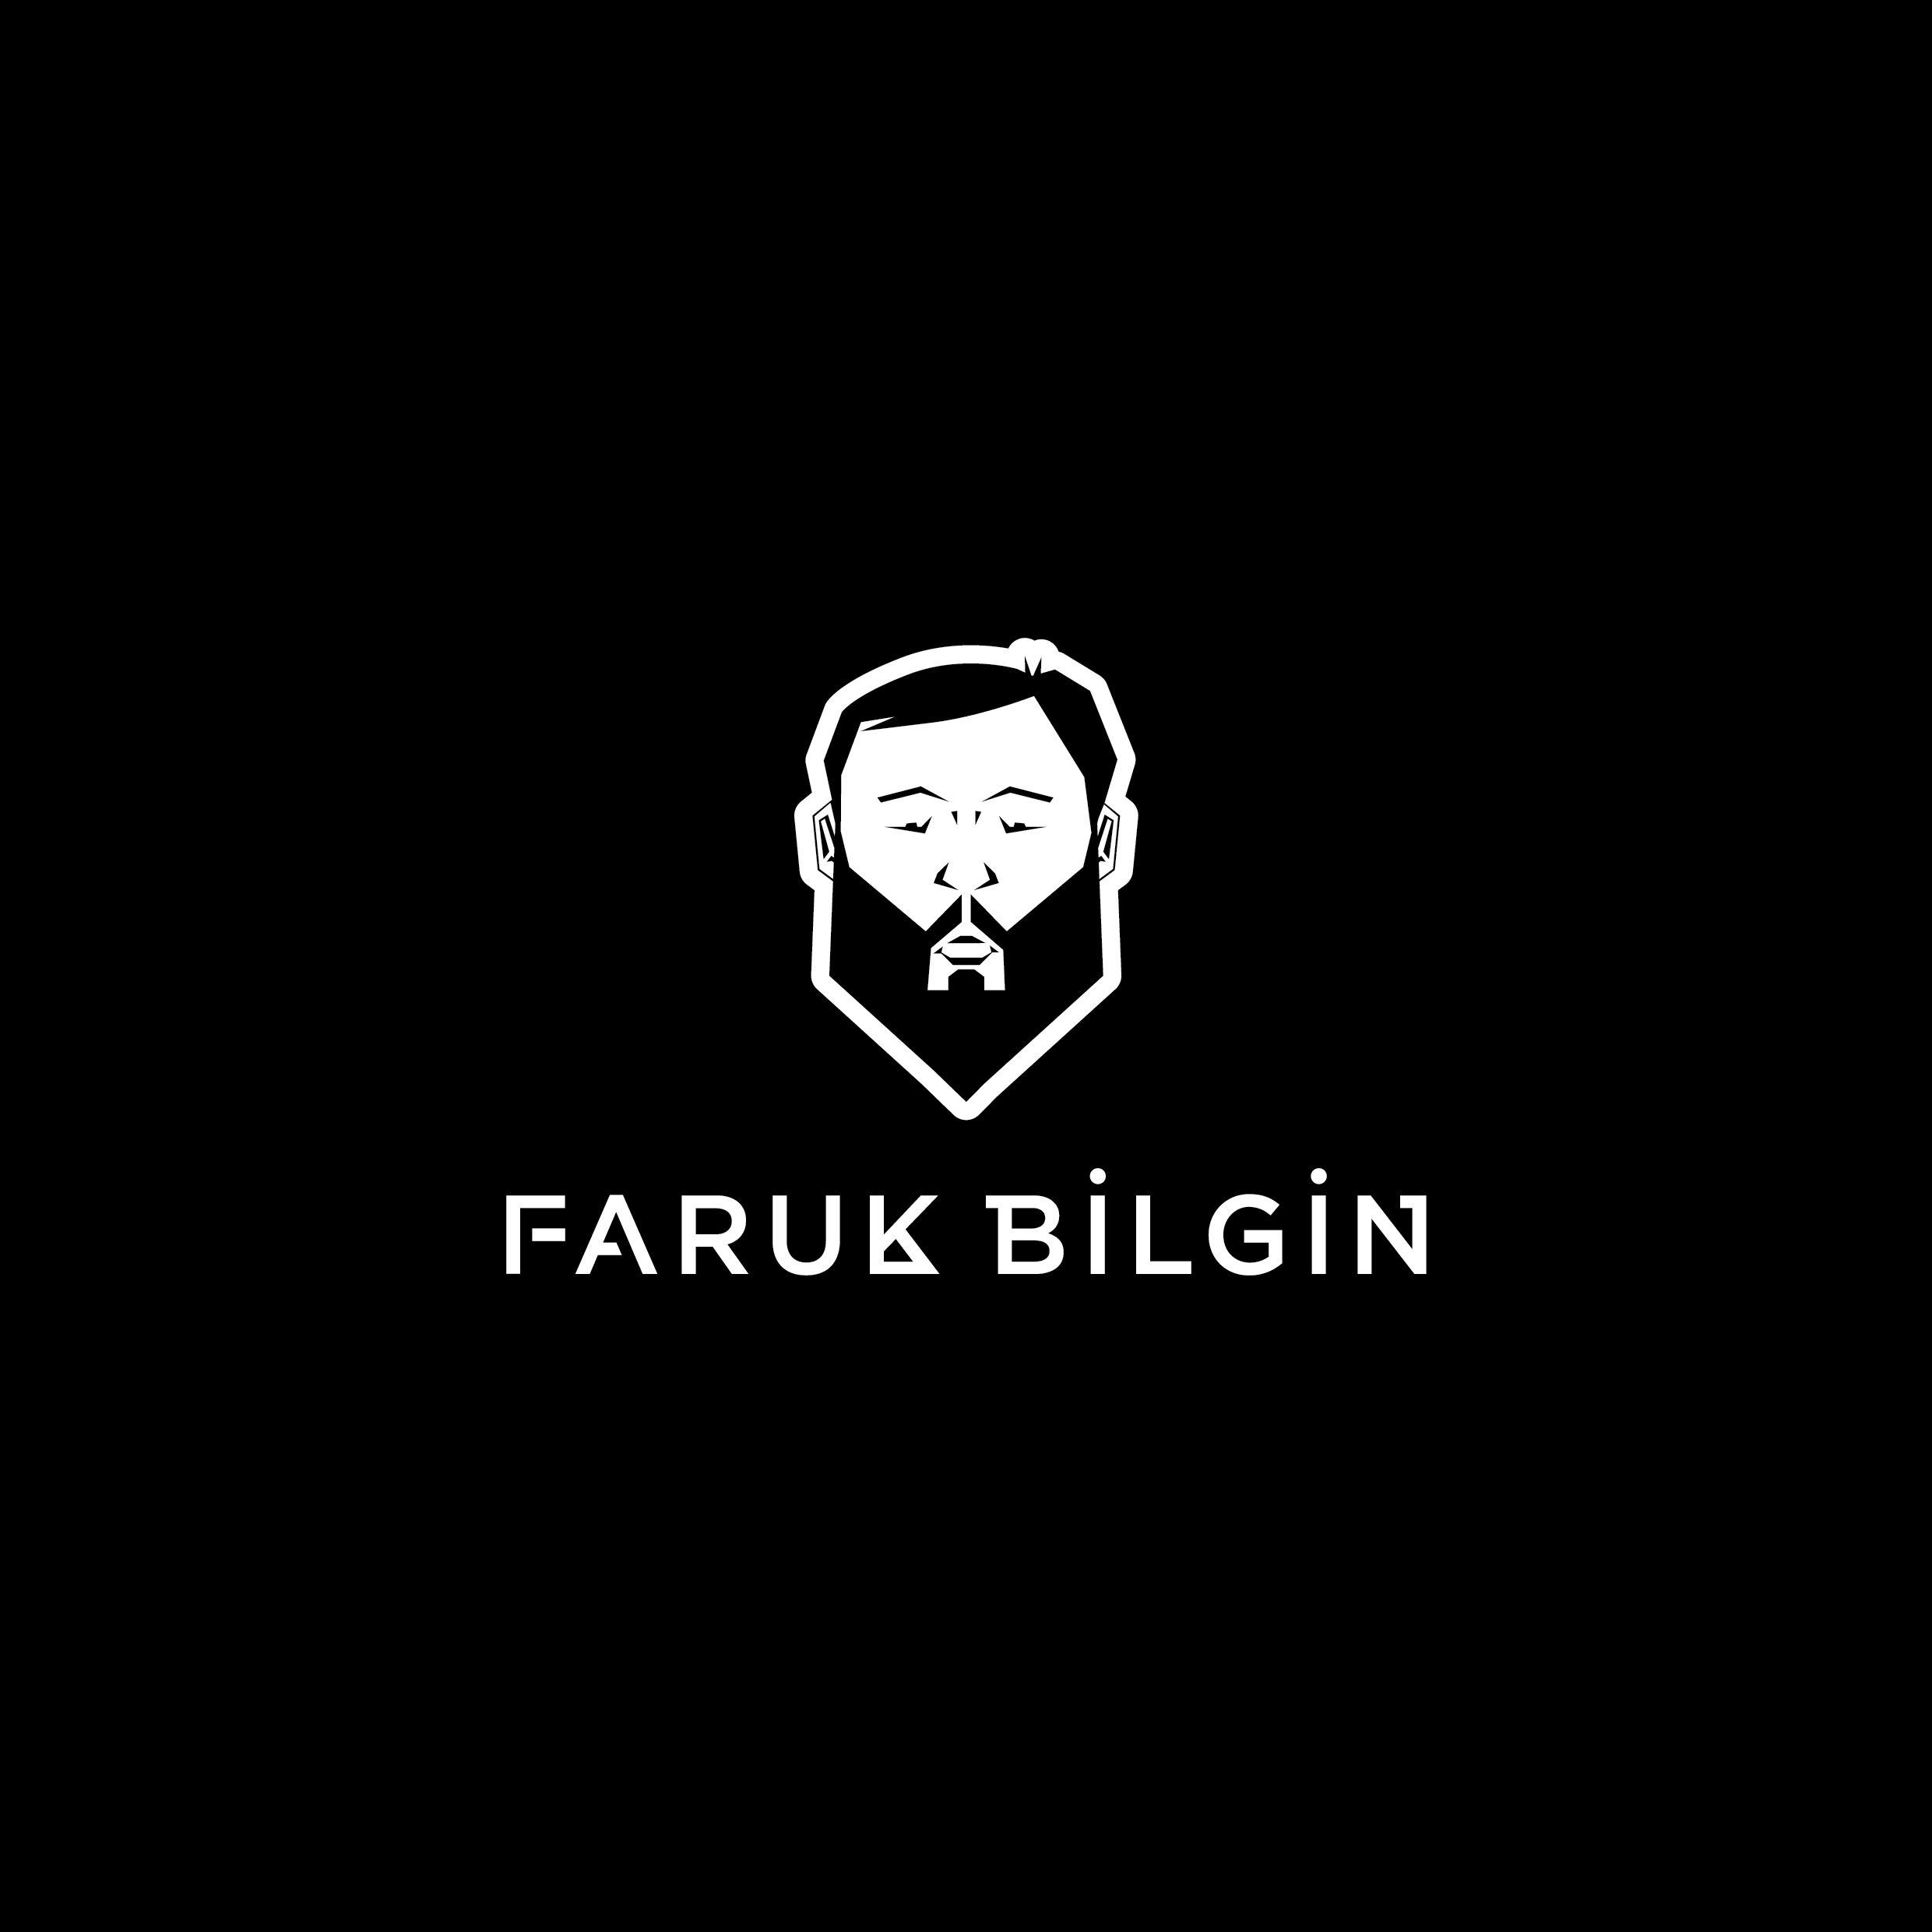 FARUK_BILGIN_LOGO_21x21cm_2